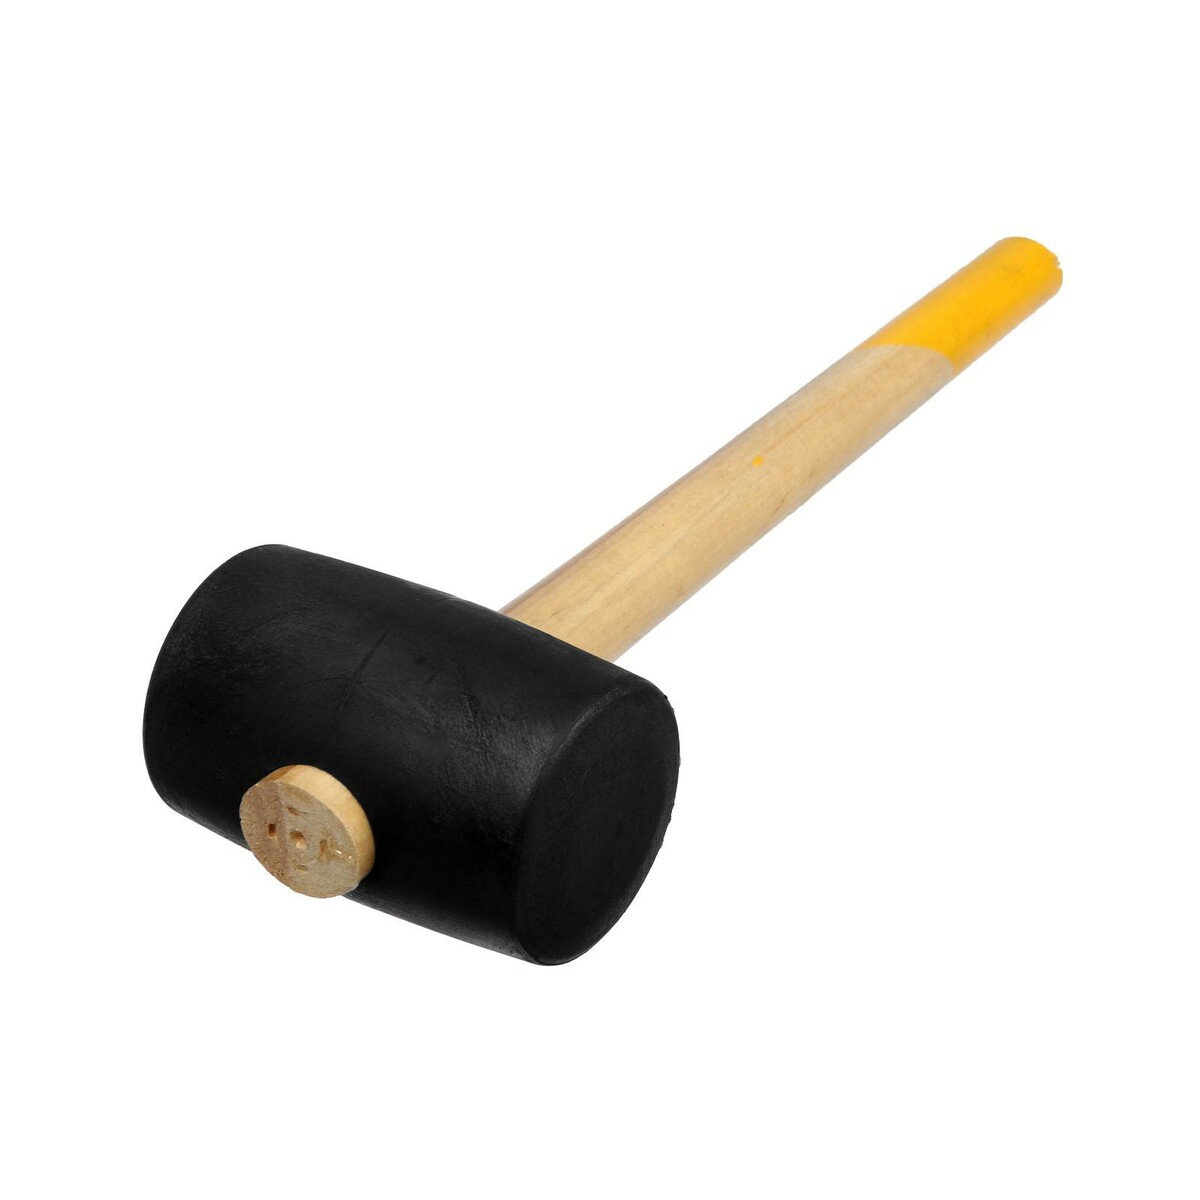 Киянка тундра, деревянная рукоятка, черная резина, 65 мм, 680 г киянка тундра деревянная рукоятка черная резина 65 мм 680 г